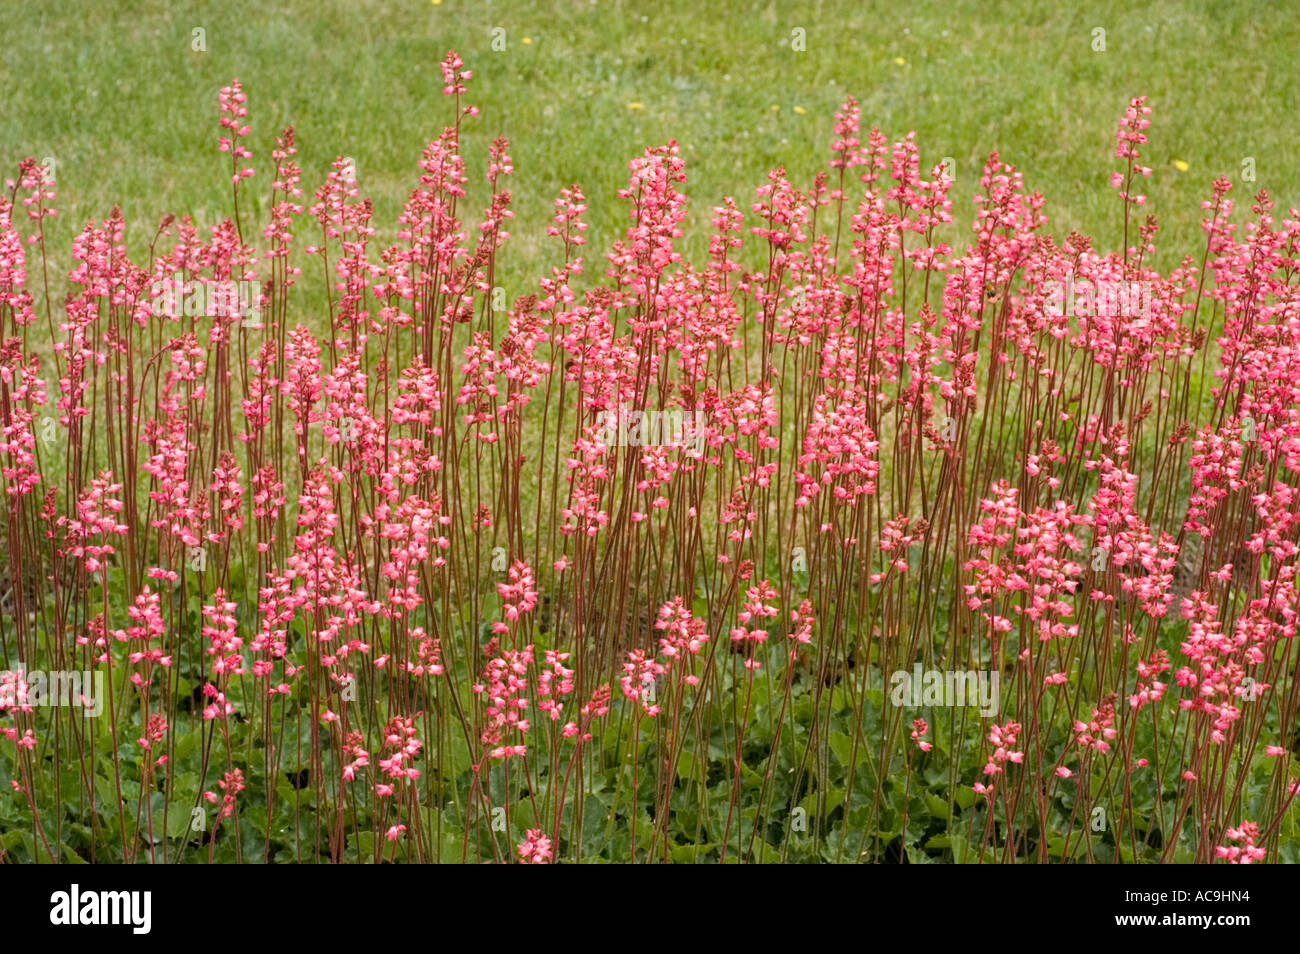 Pink flowers of Sexifragaceae Heuchera x Brizoides Titania Stock Photo